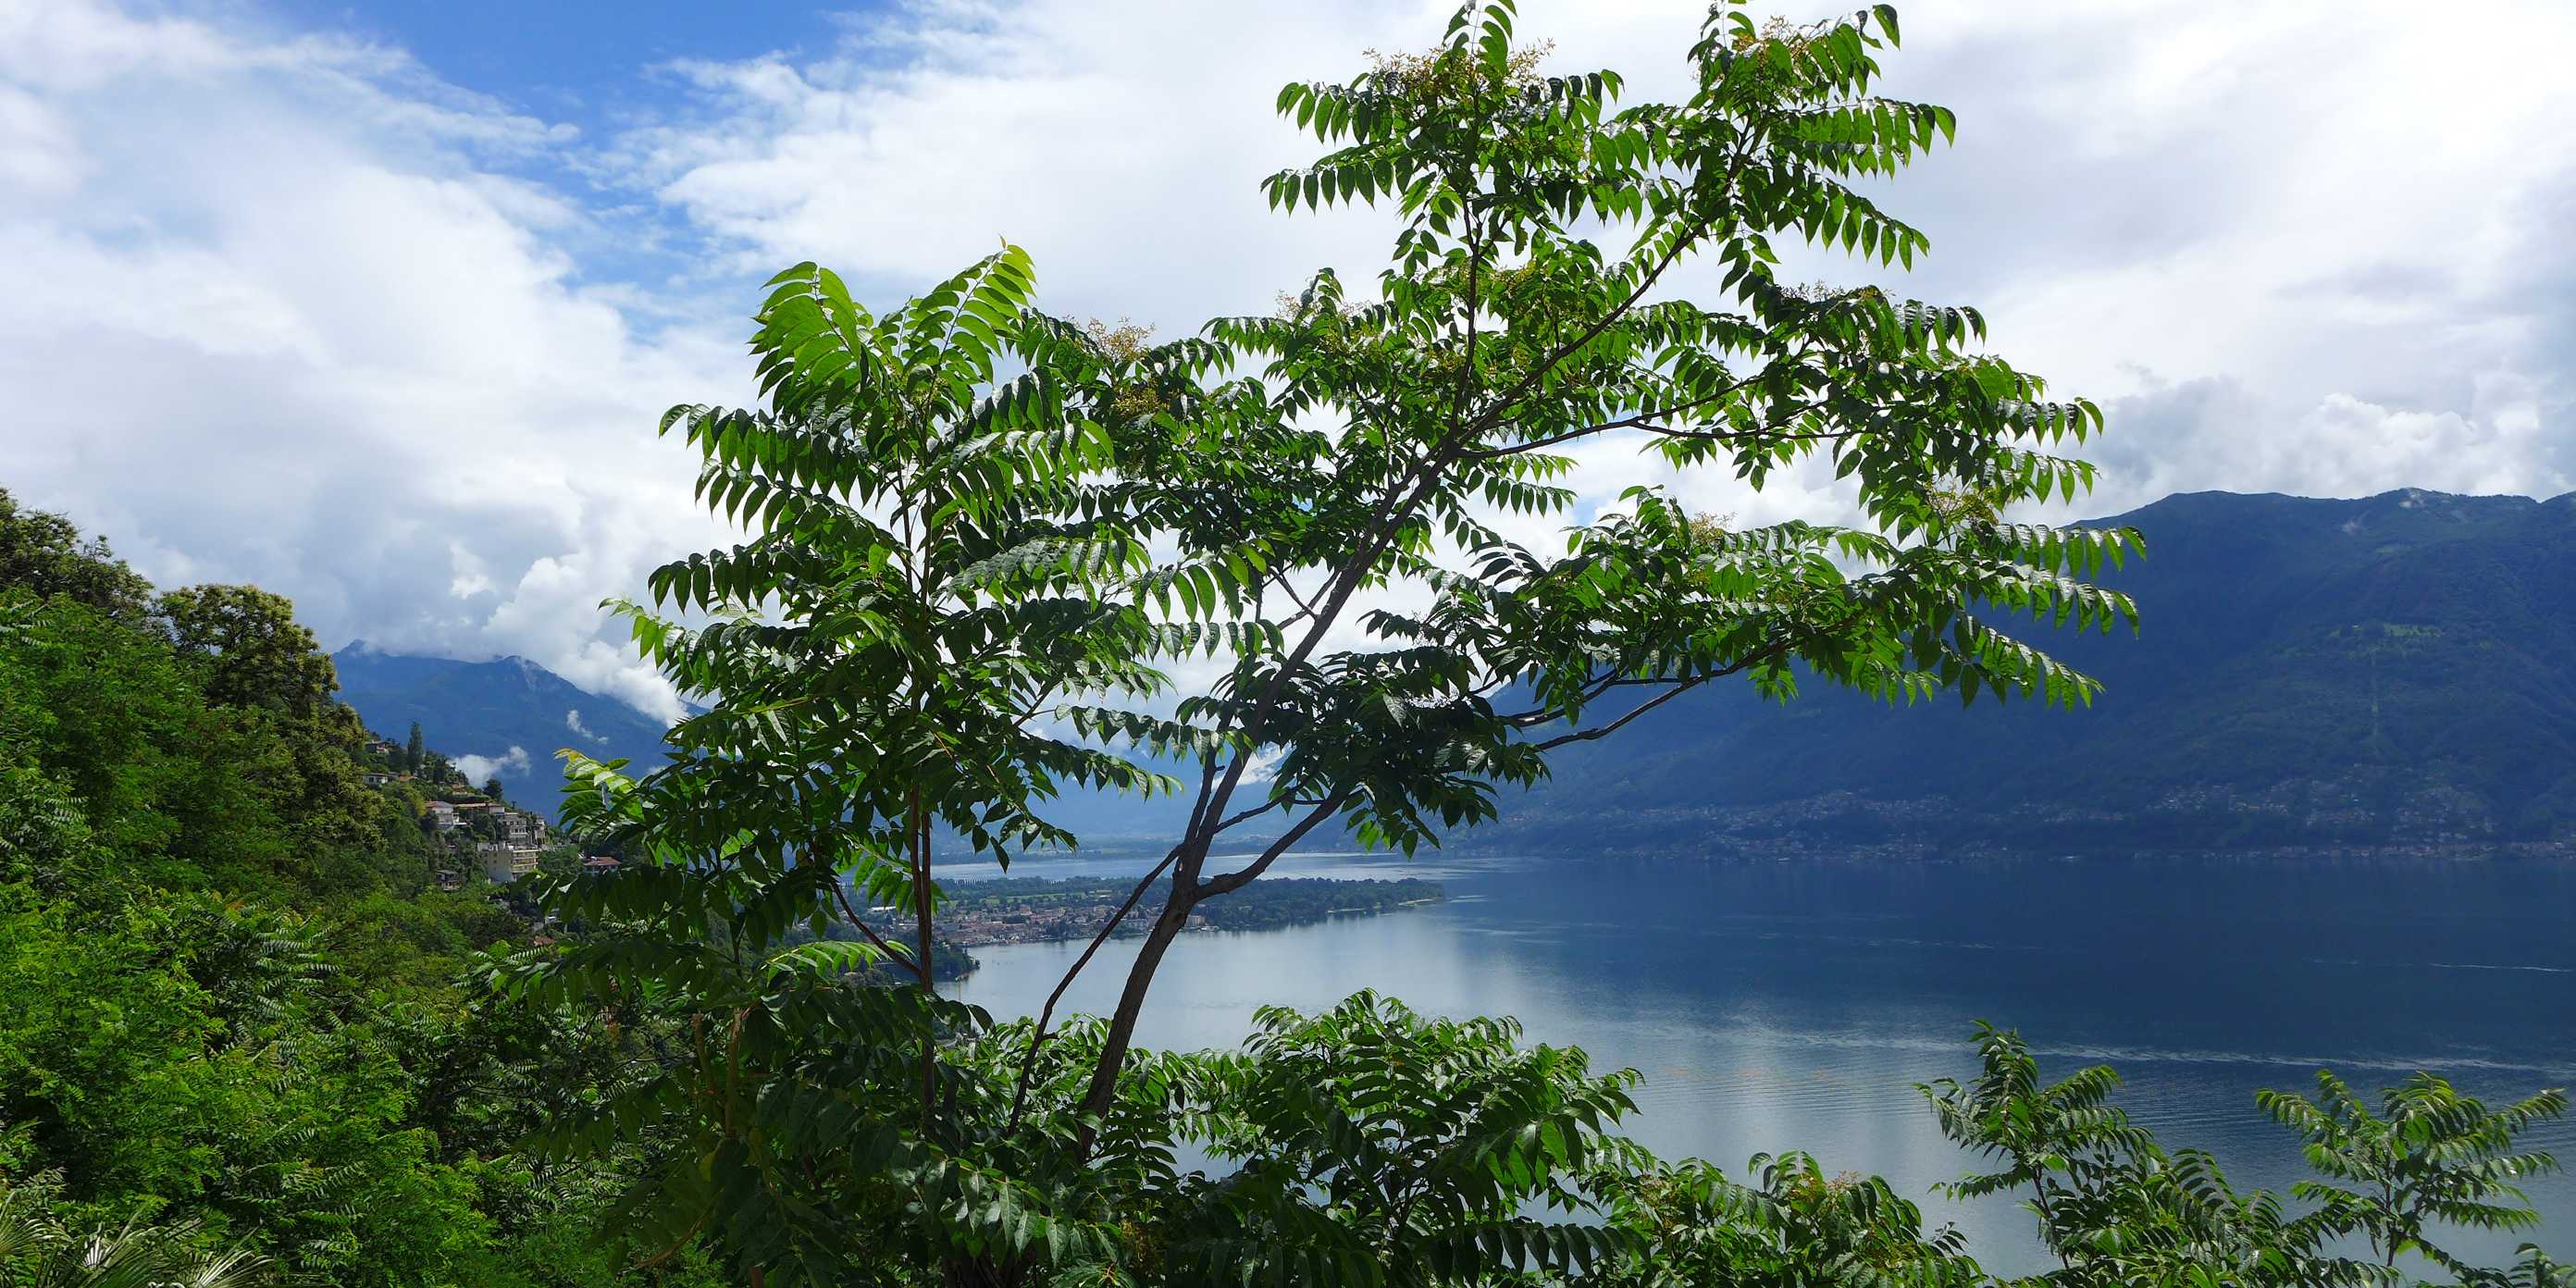 Götterbaum im Vordergrund, im Hintergrund der Lago Maggiore und bewaldete Hügel